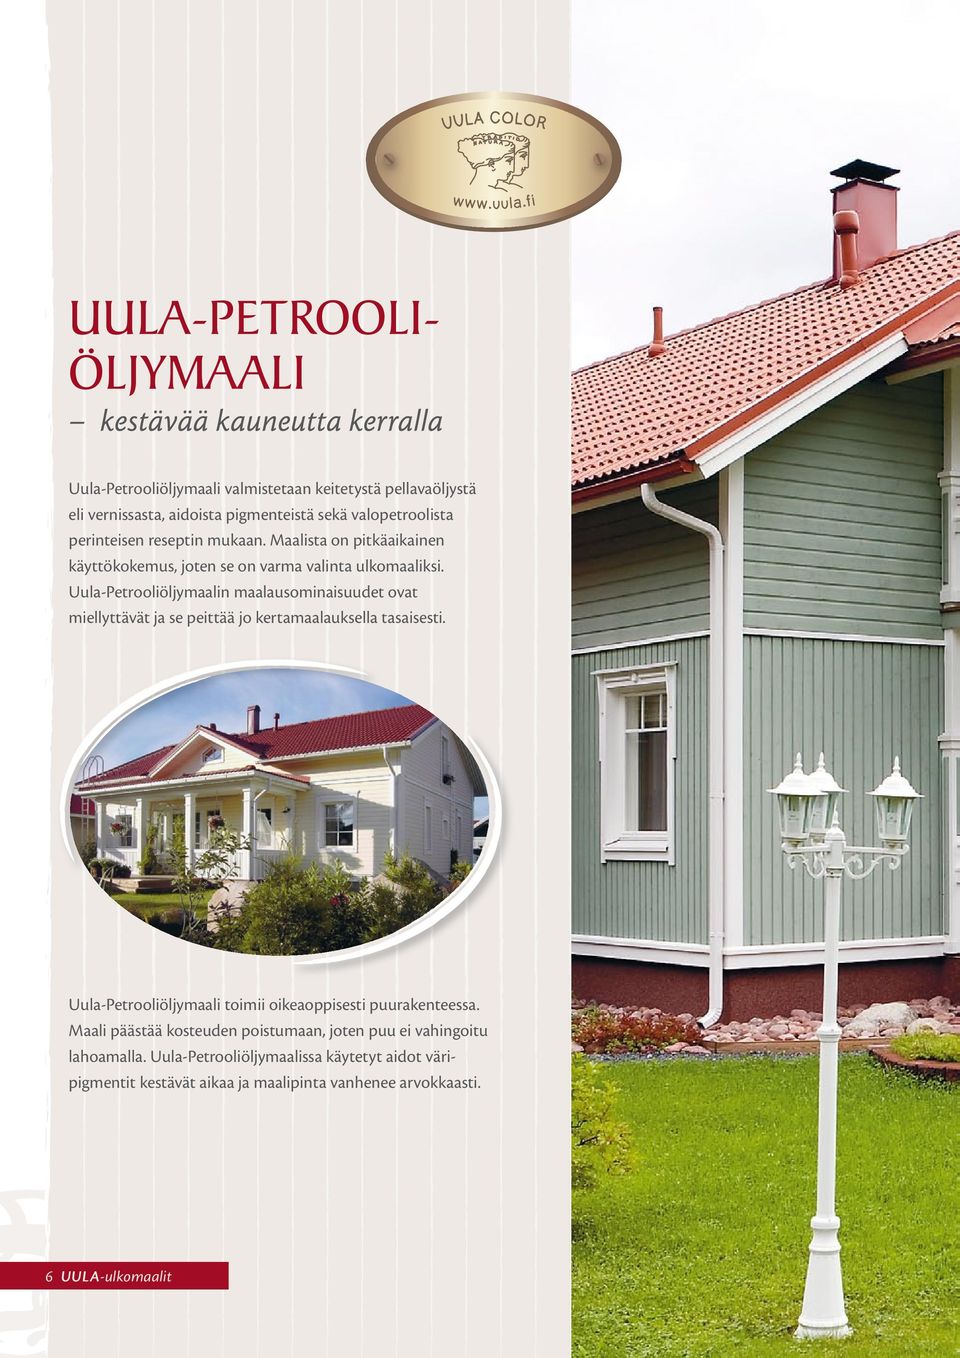 Uula-Petrooliöljymaalin maalausominaisuudet ovat miellyttävät ja se peittää jo kertamaalauksella tasaisesti.